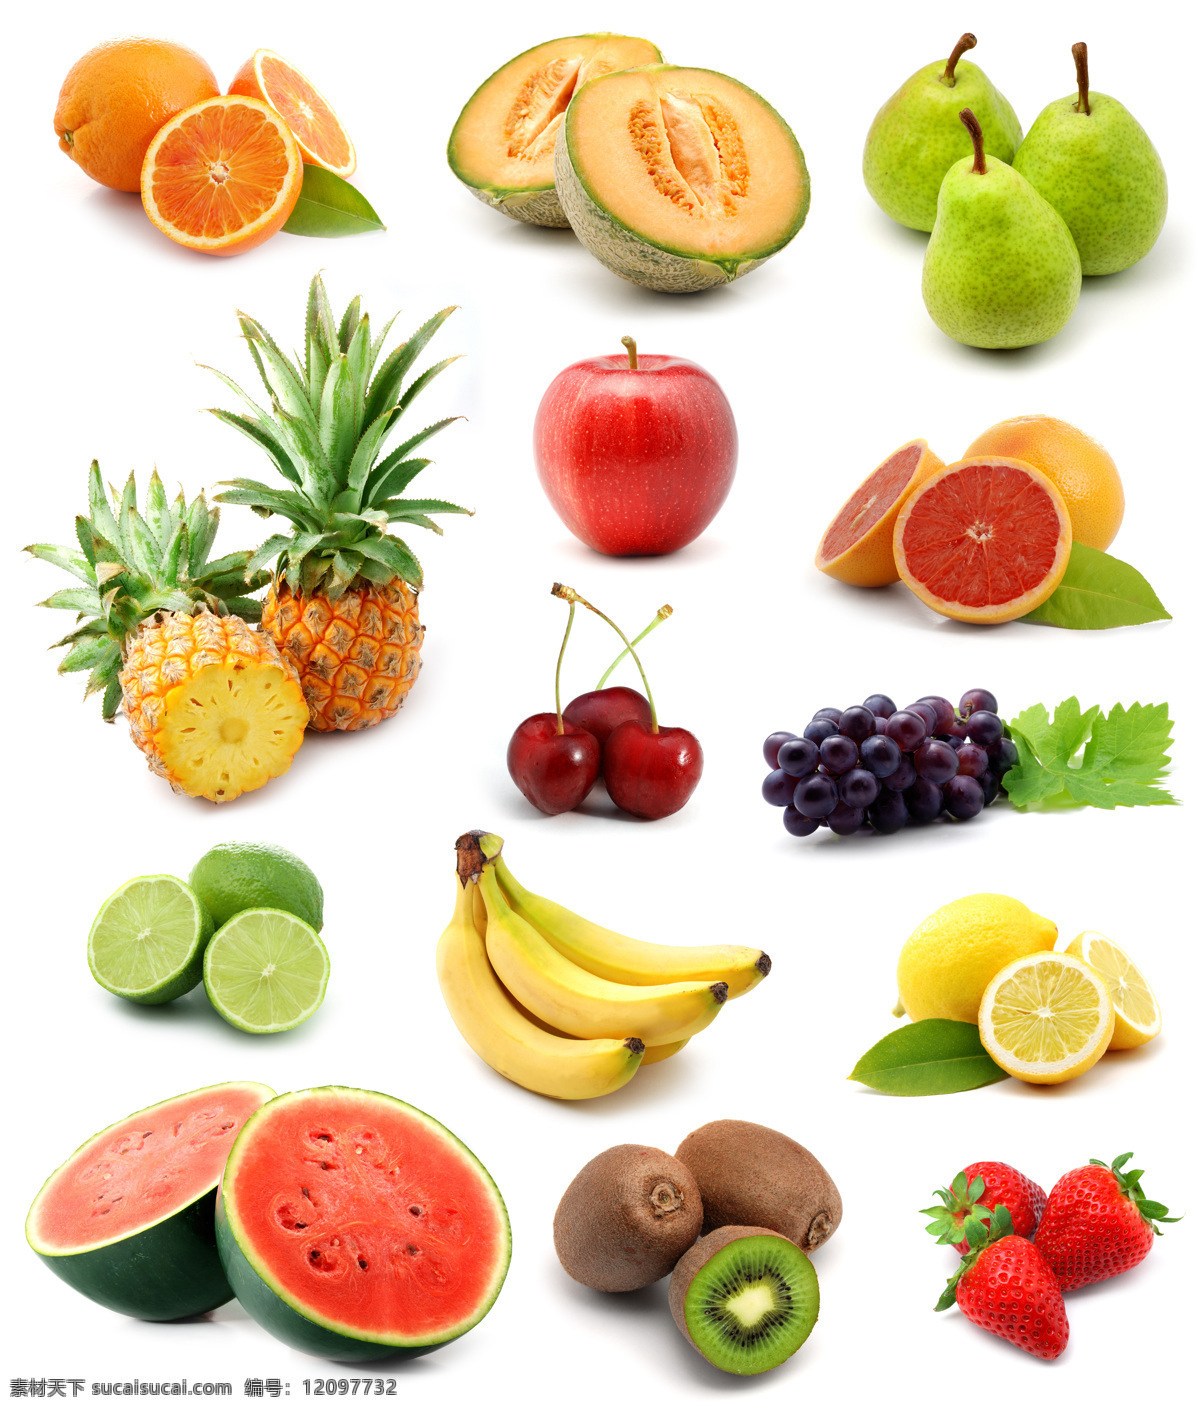 多种 水果 背景 西瓜 香蕉 凤梨 菠萝 蓝莓 猕猴桃 葡萄 橙子 柠檬 果实 果子 新鲜水果 水果背景 水果图片 餐饮美食